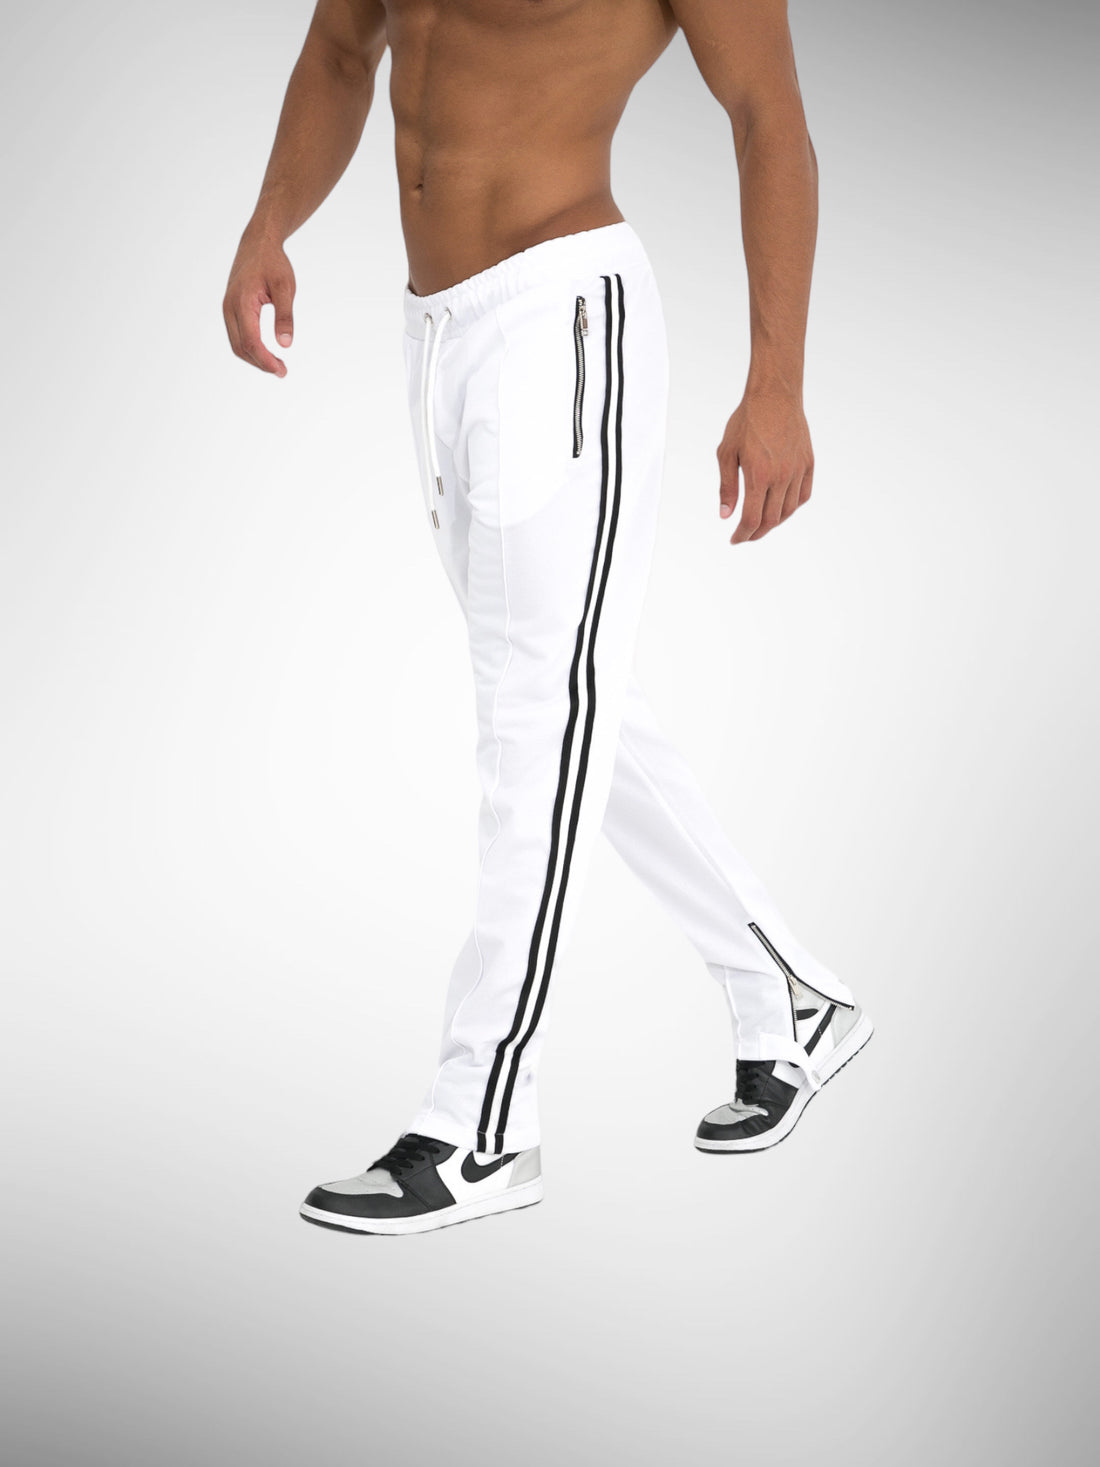 Pantalon Zip Miami blanc bande noir - Stayin